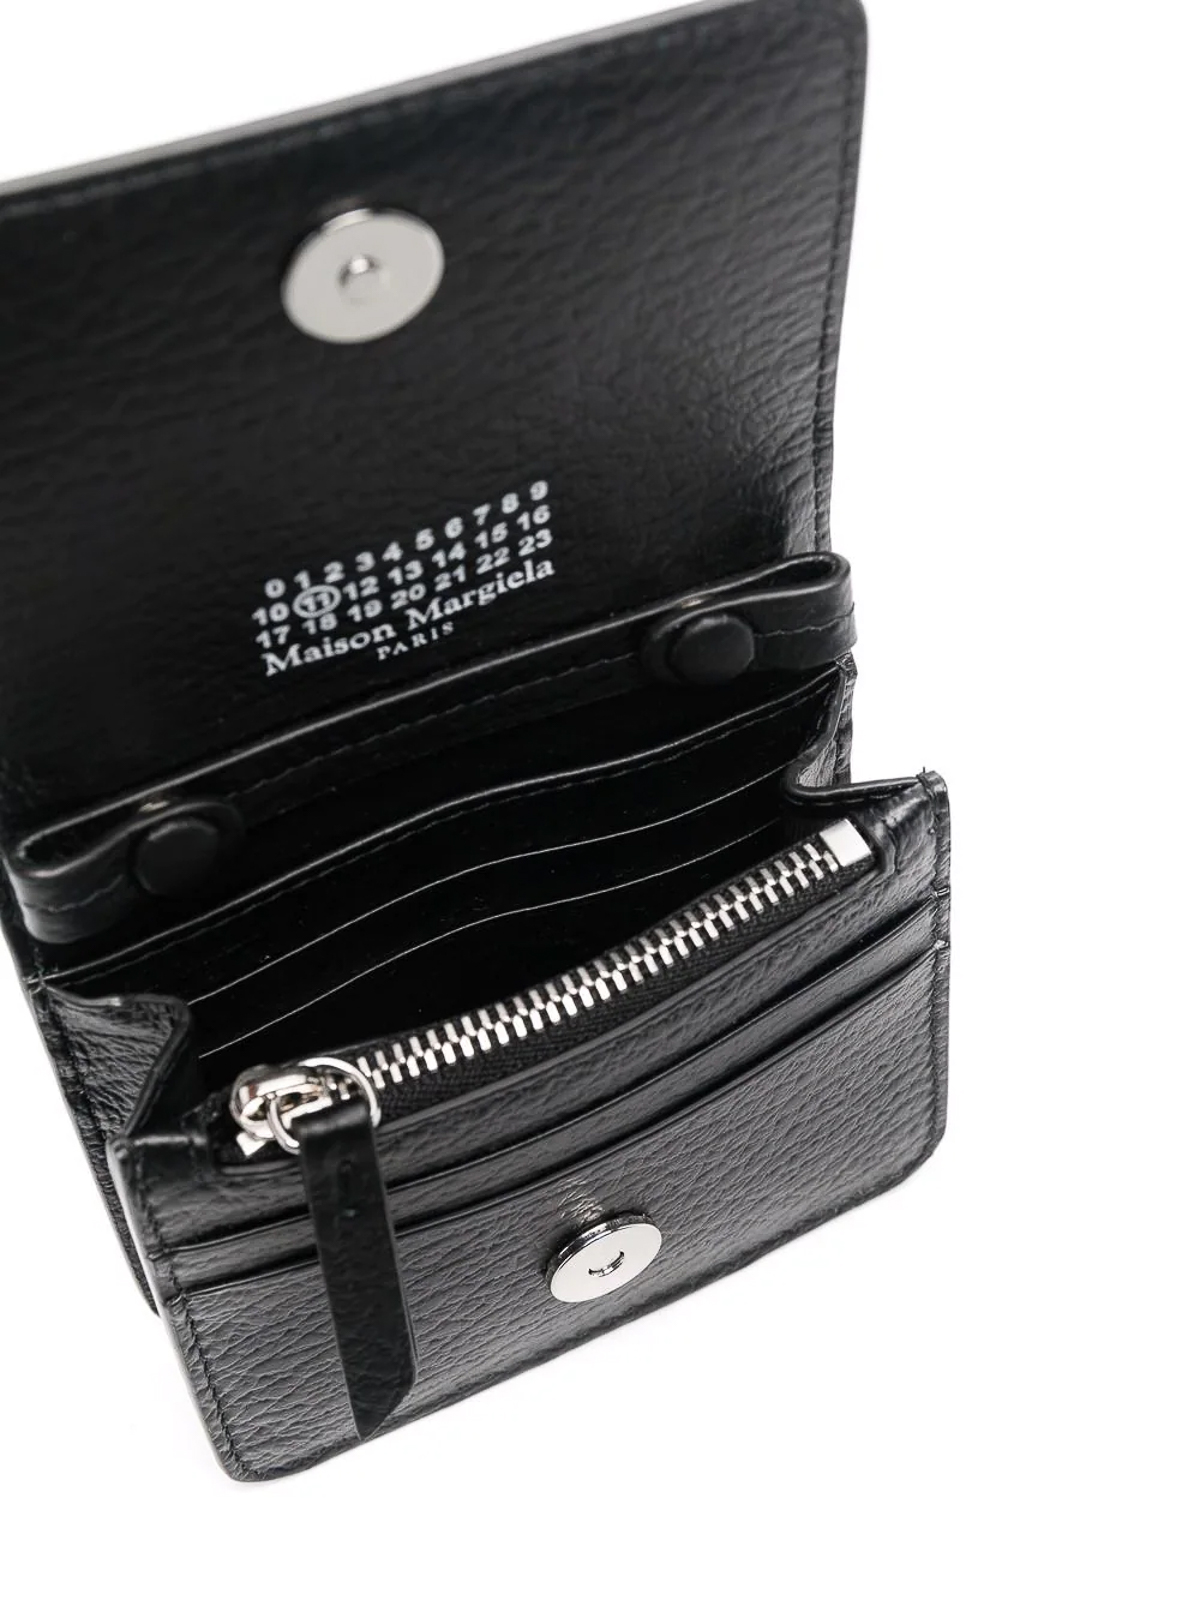 Wallets & purses Maison Margiela - Four stitch chain-link wallet